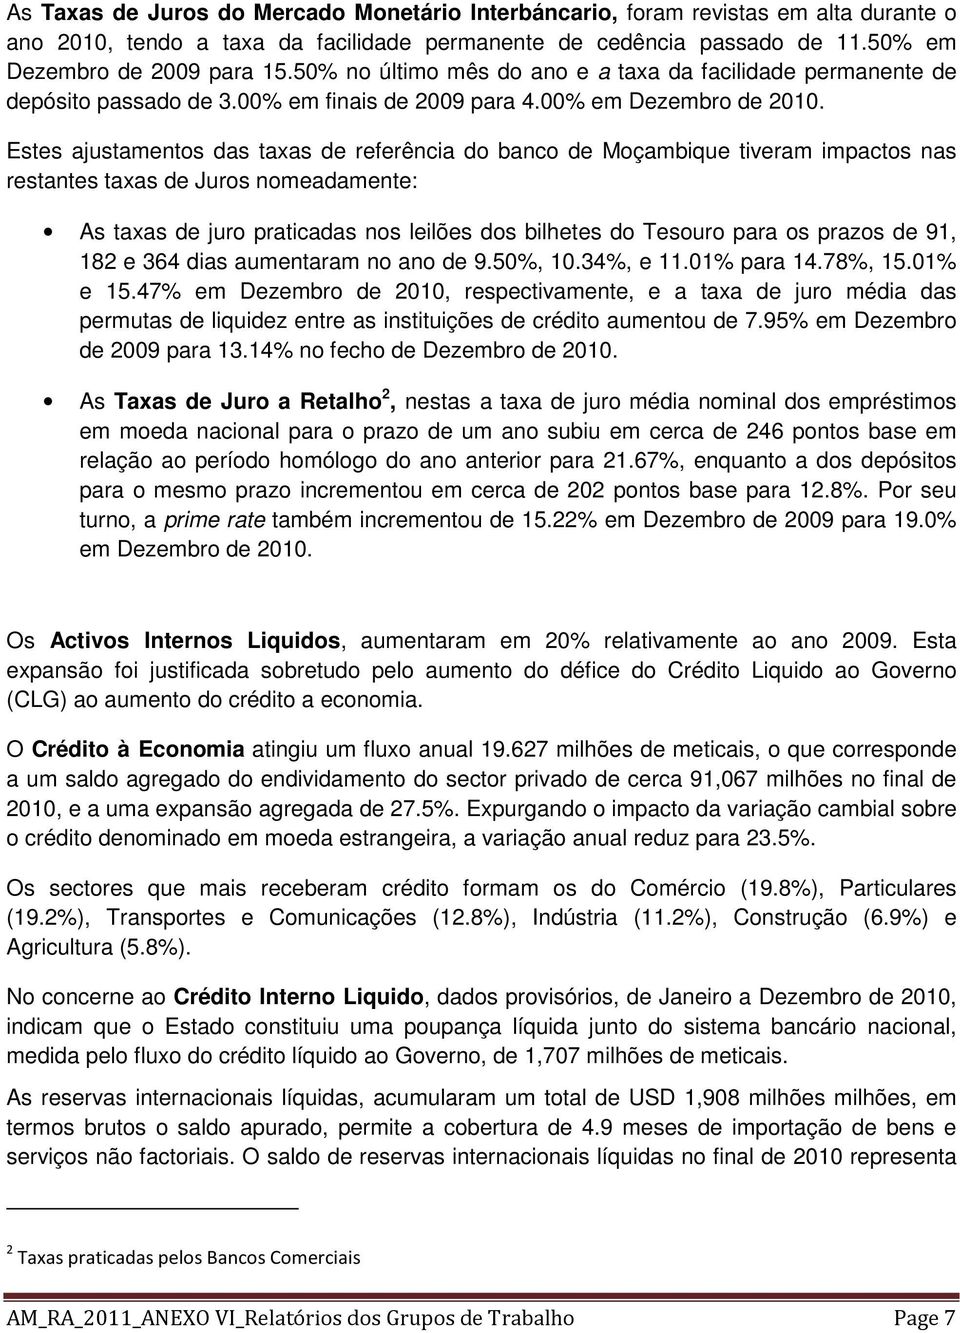 Estes ajustamentos das taxas de referência do banco de Moçambique tiveram impactos nas restantes taxas de Juros nomeadamente: As taxas de juro praticadas nos leilões dos bilhetes do Tesouro para os